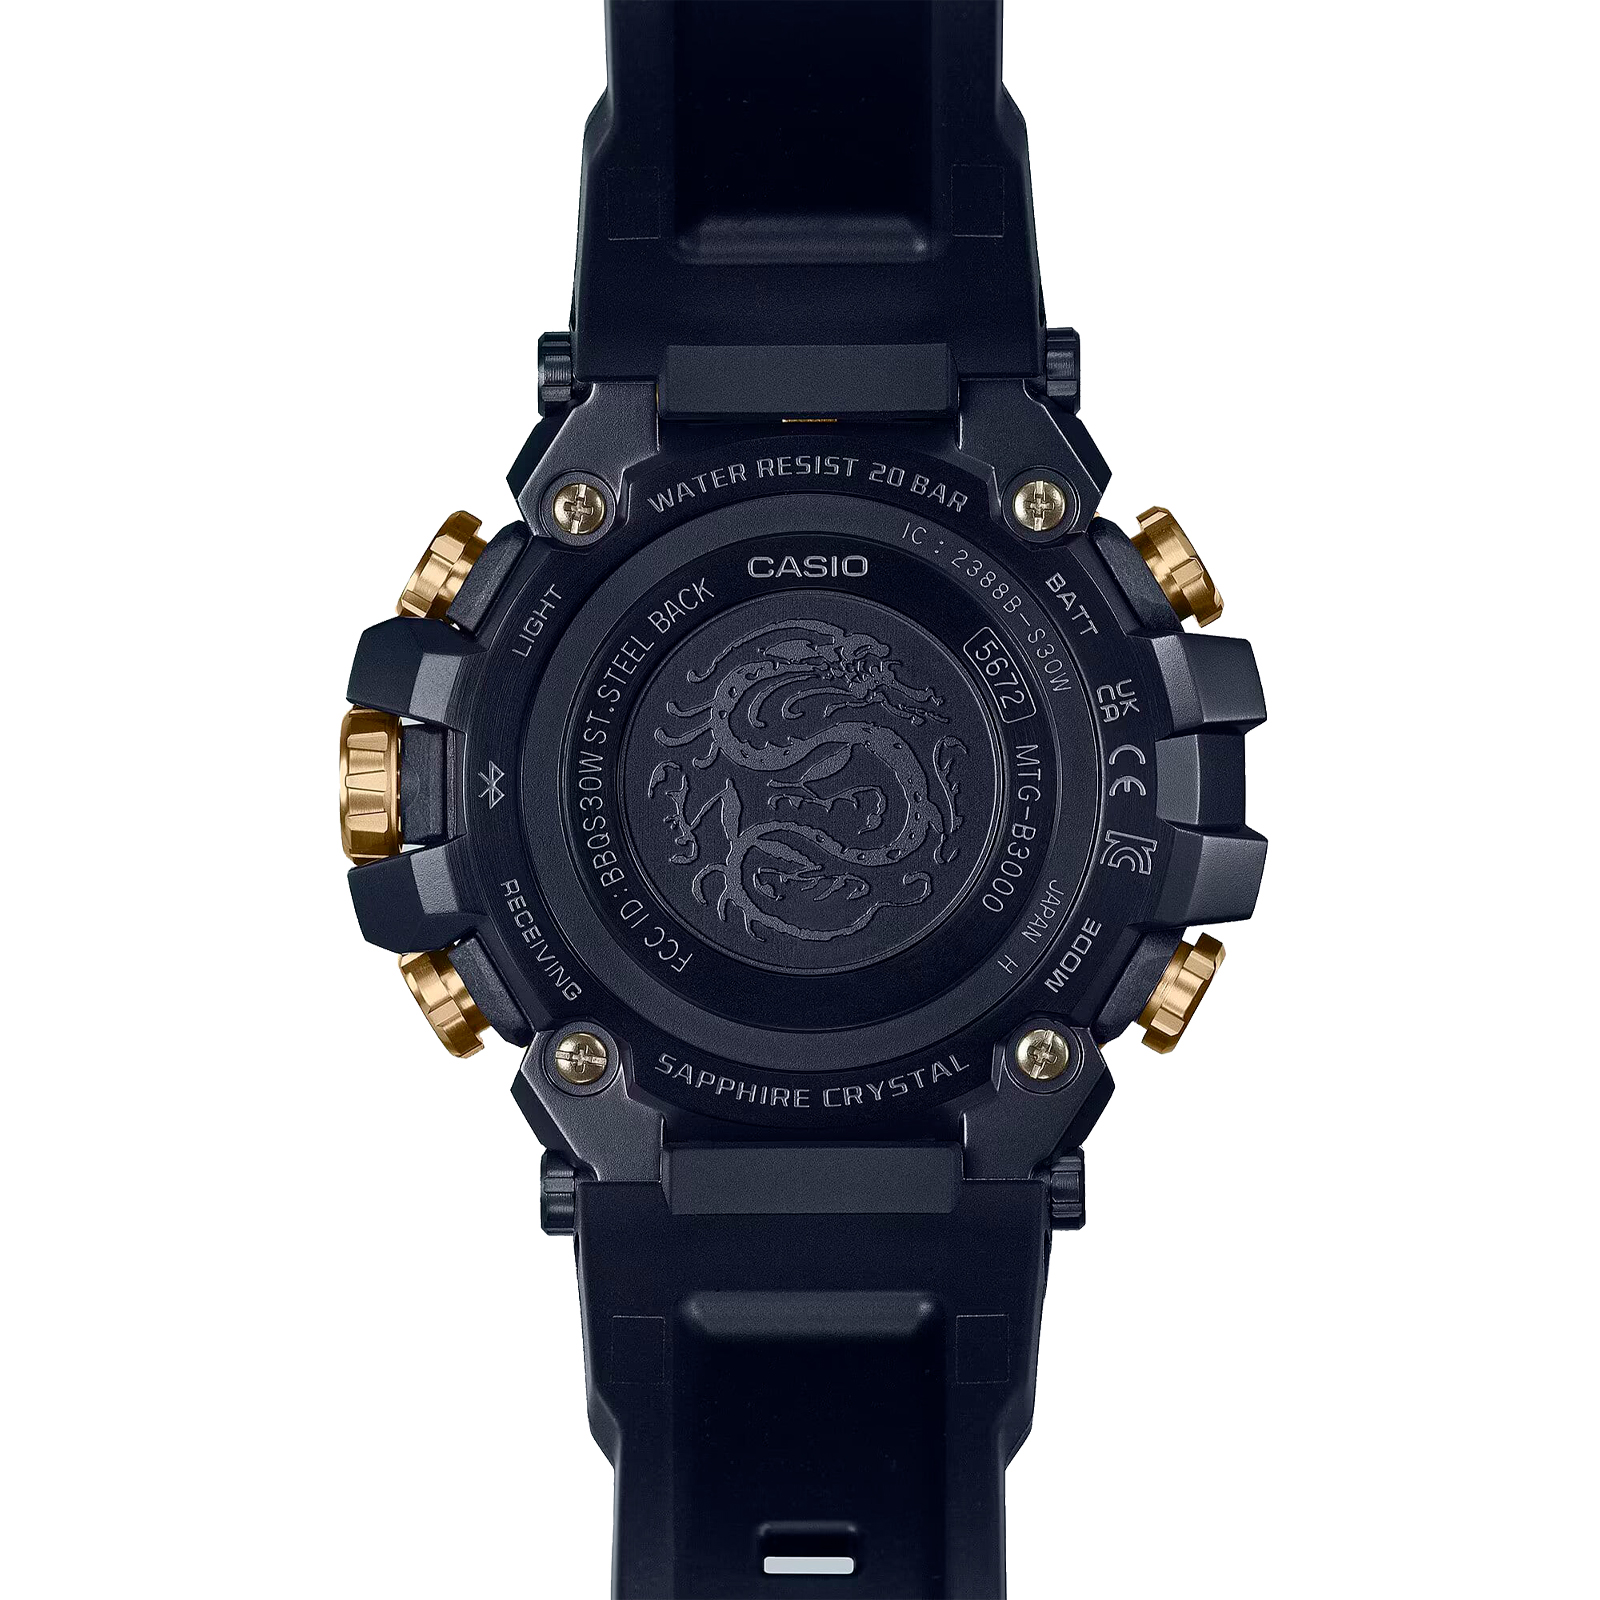 Reloj G-SHOCK MTG-B3000CXD-9A Carbono/Acero Hombre Dorado